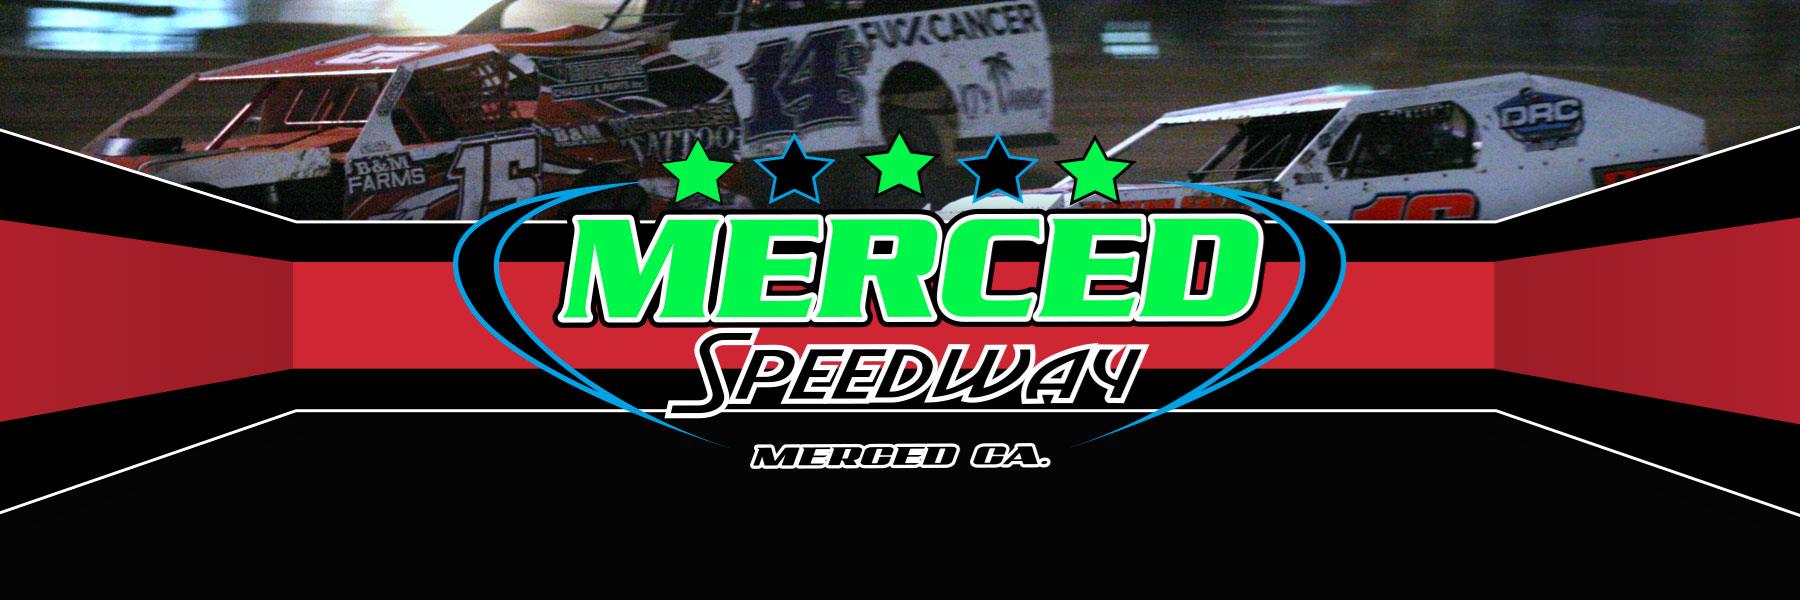 1/22/2022 - Merced Speedway